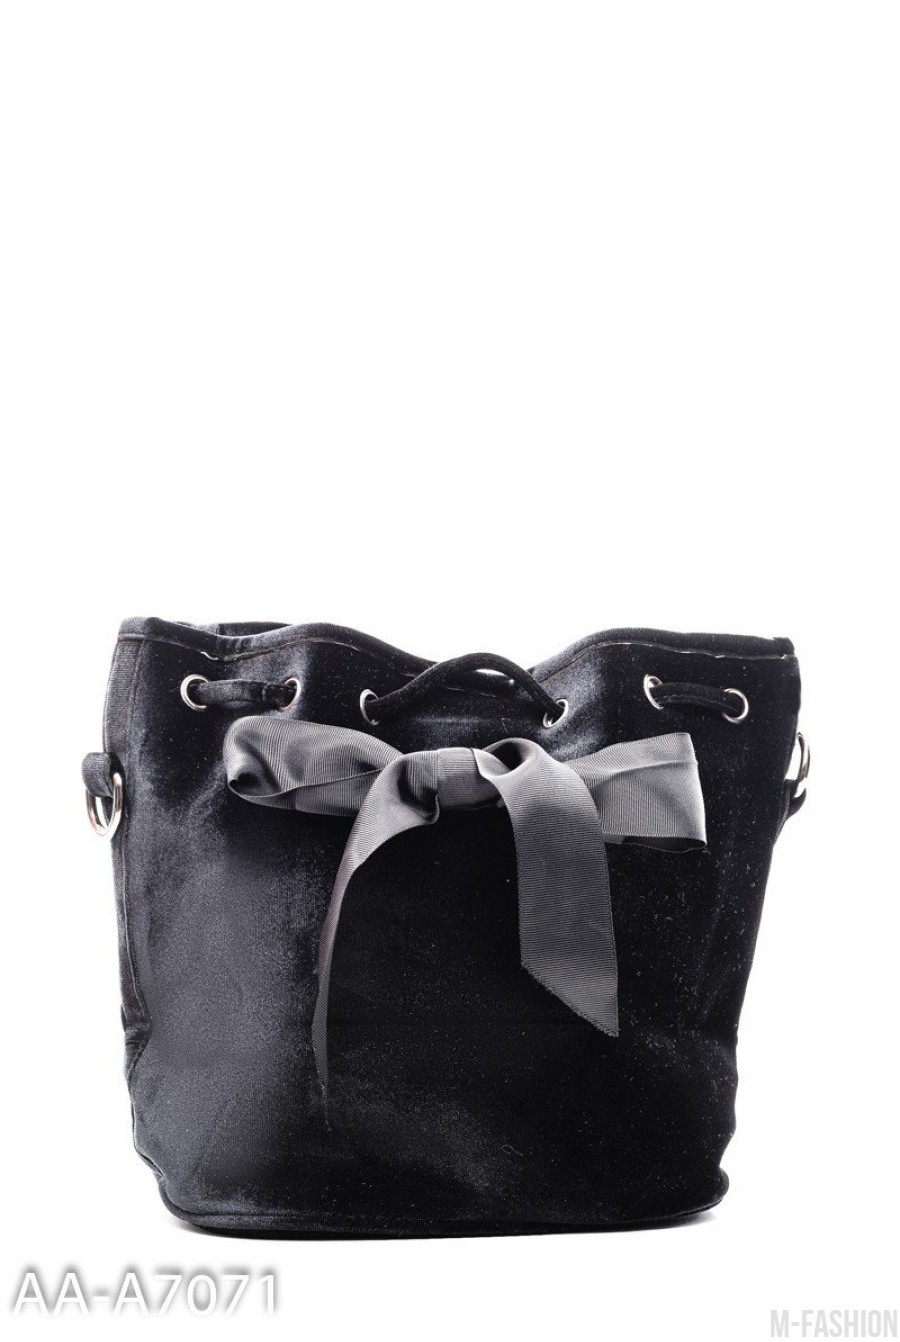 Черная торбочка с серым бантом - Фото 1